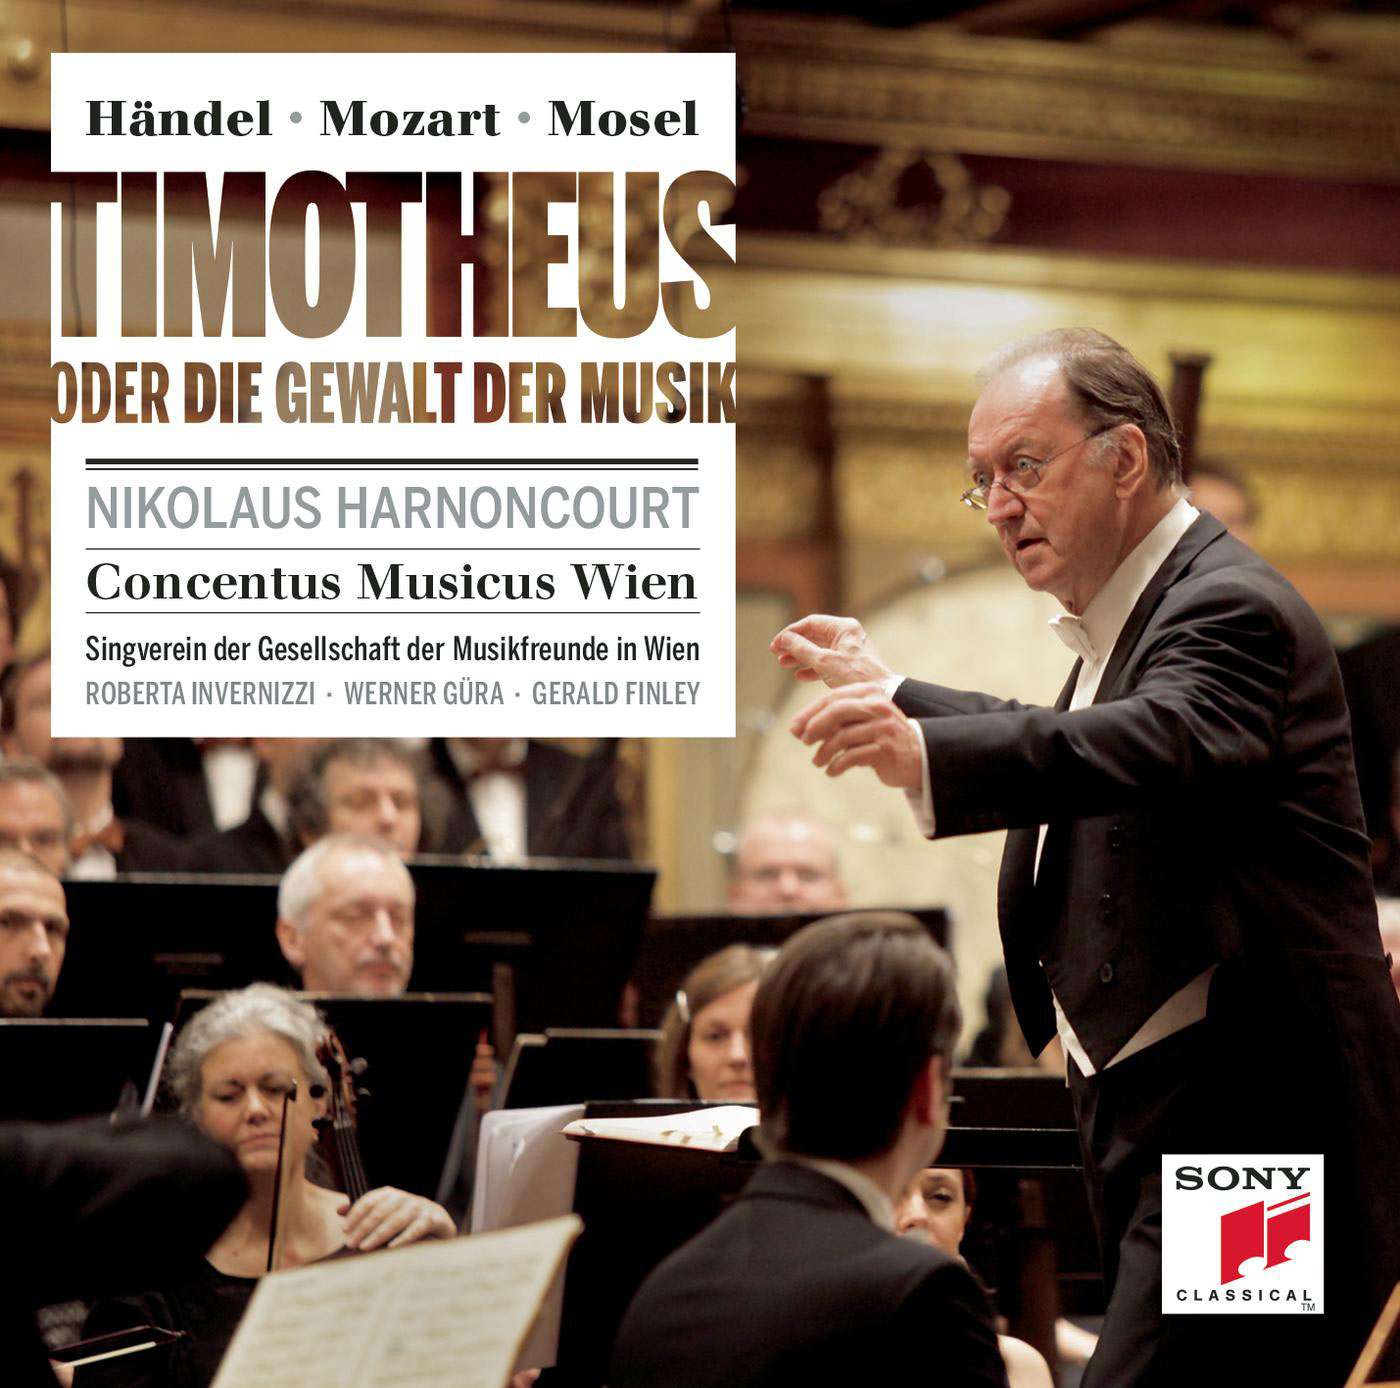 Nikolaus Harnoncourt - Handel, Mozart, Mosel: Timotheus Oder Die Gewalt Der Musik (Timothee Ou Le Pouvoir De La Musique) (2013) [FLAC 24bit/48kHz]